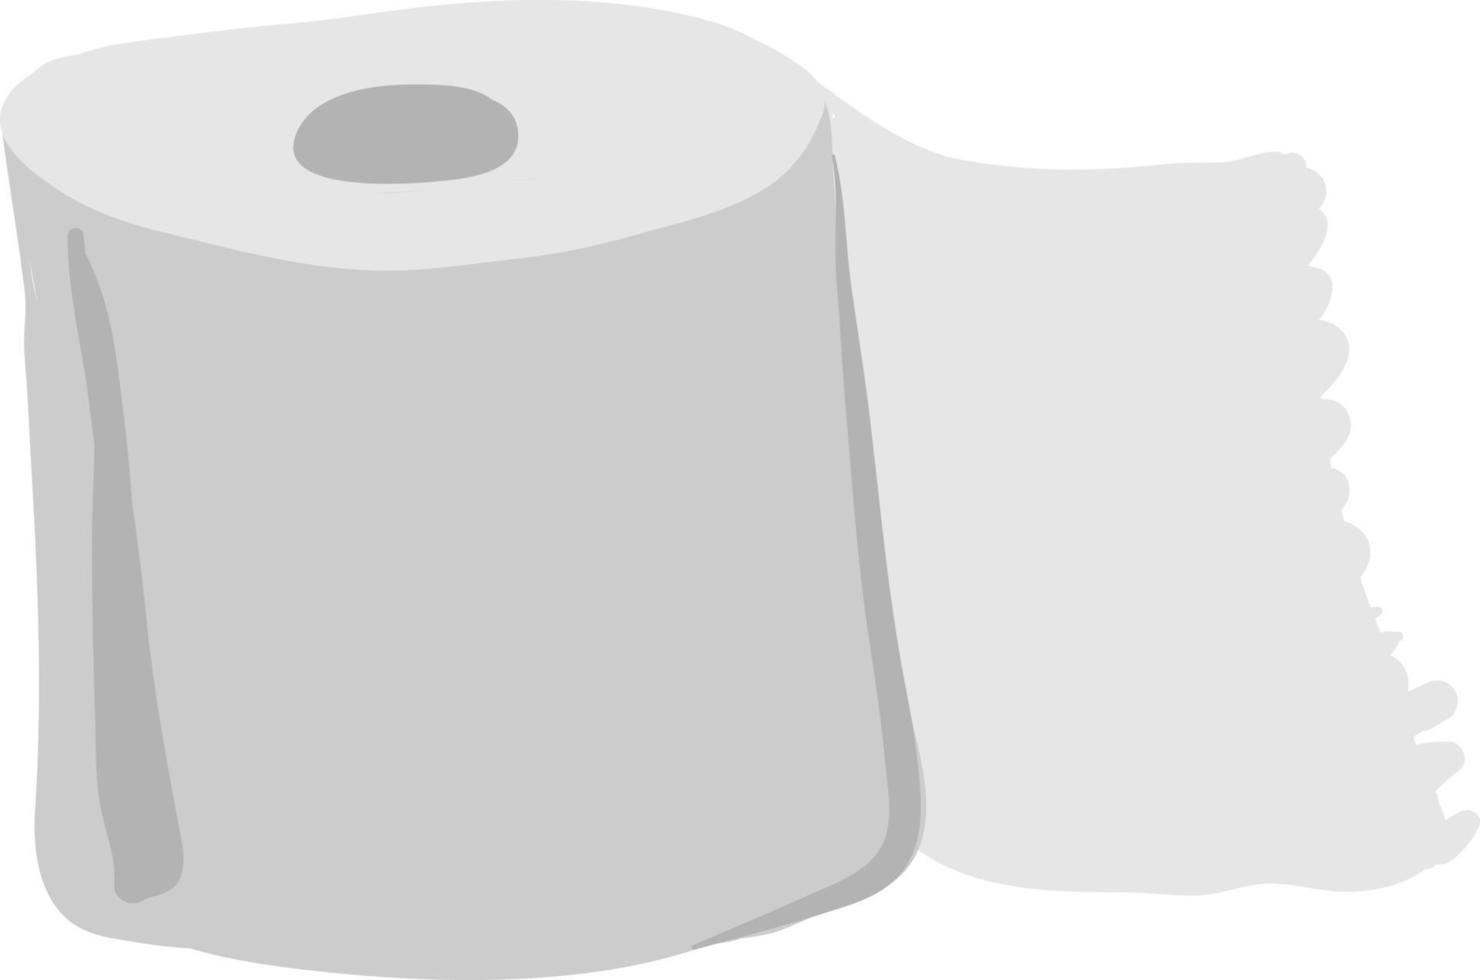 papel higiénico, ilustración, vector sobre fondo blanco.